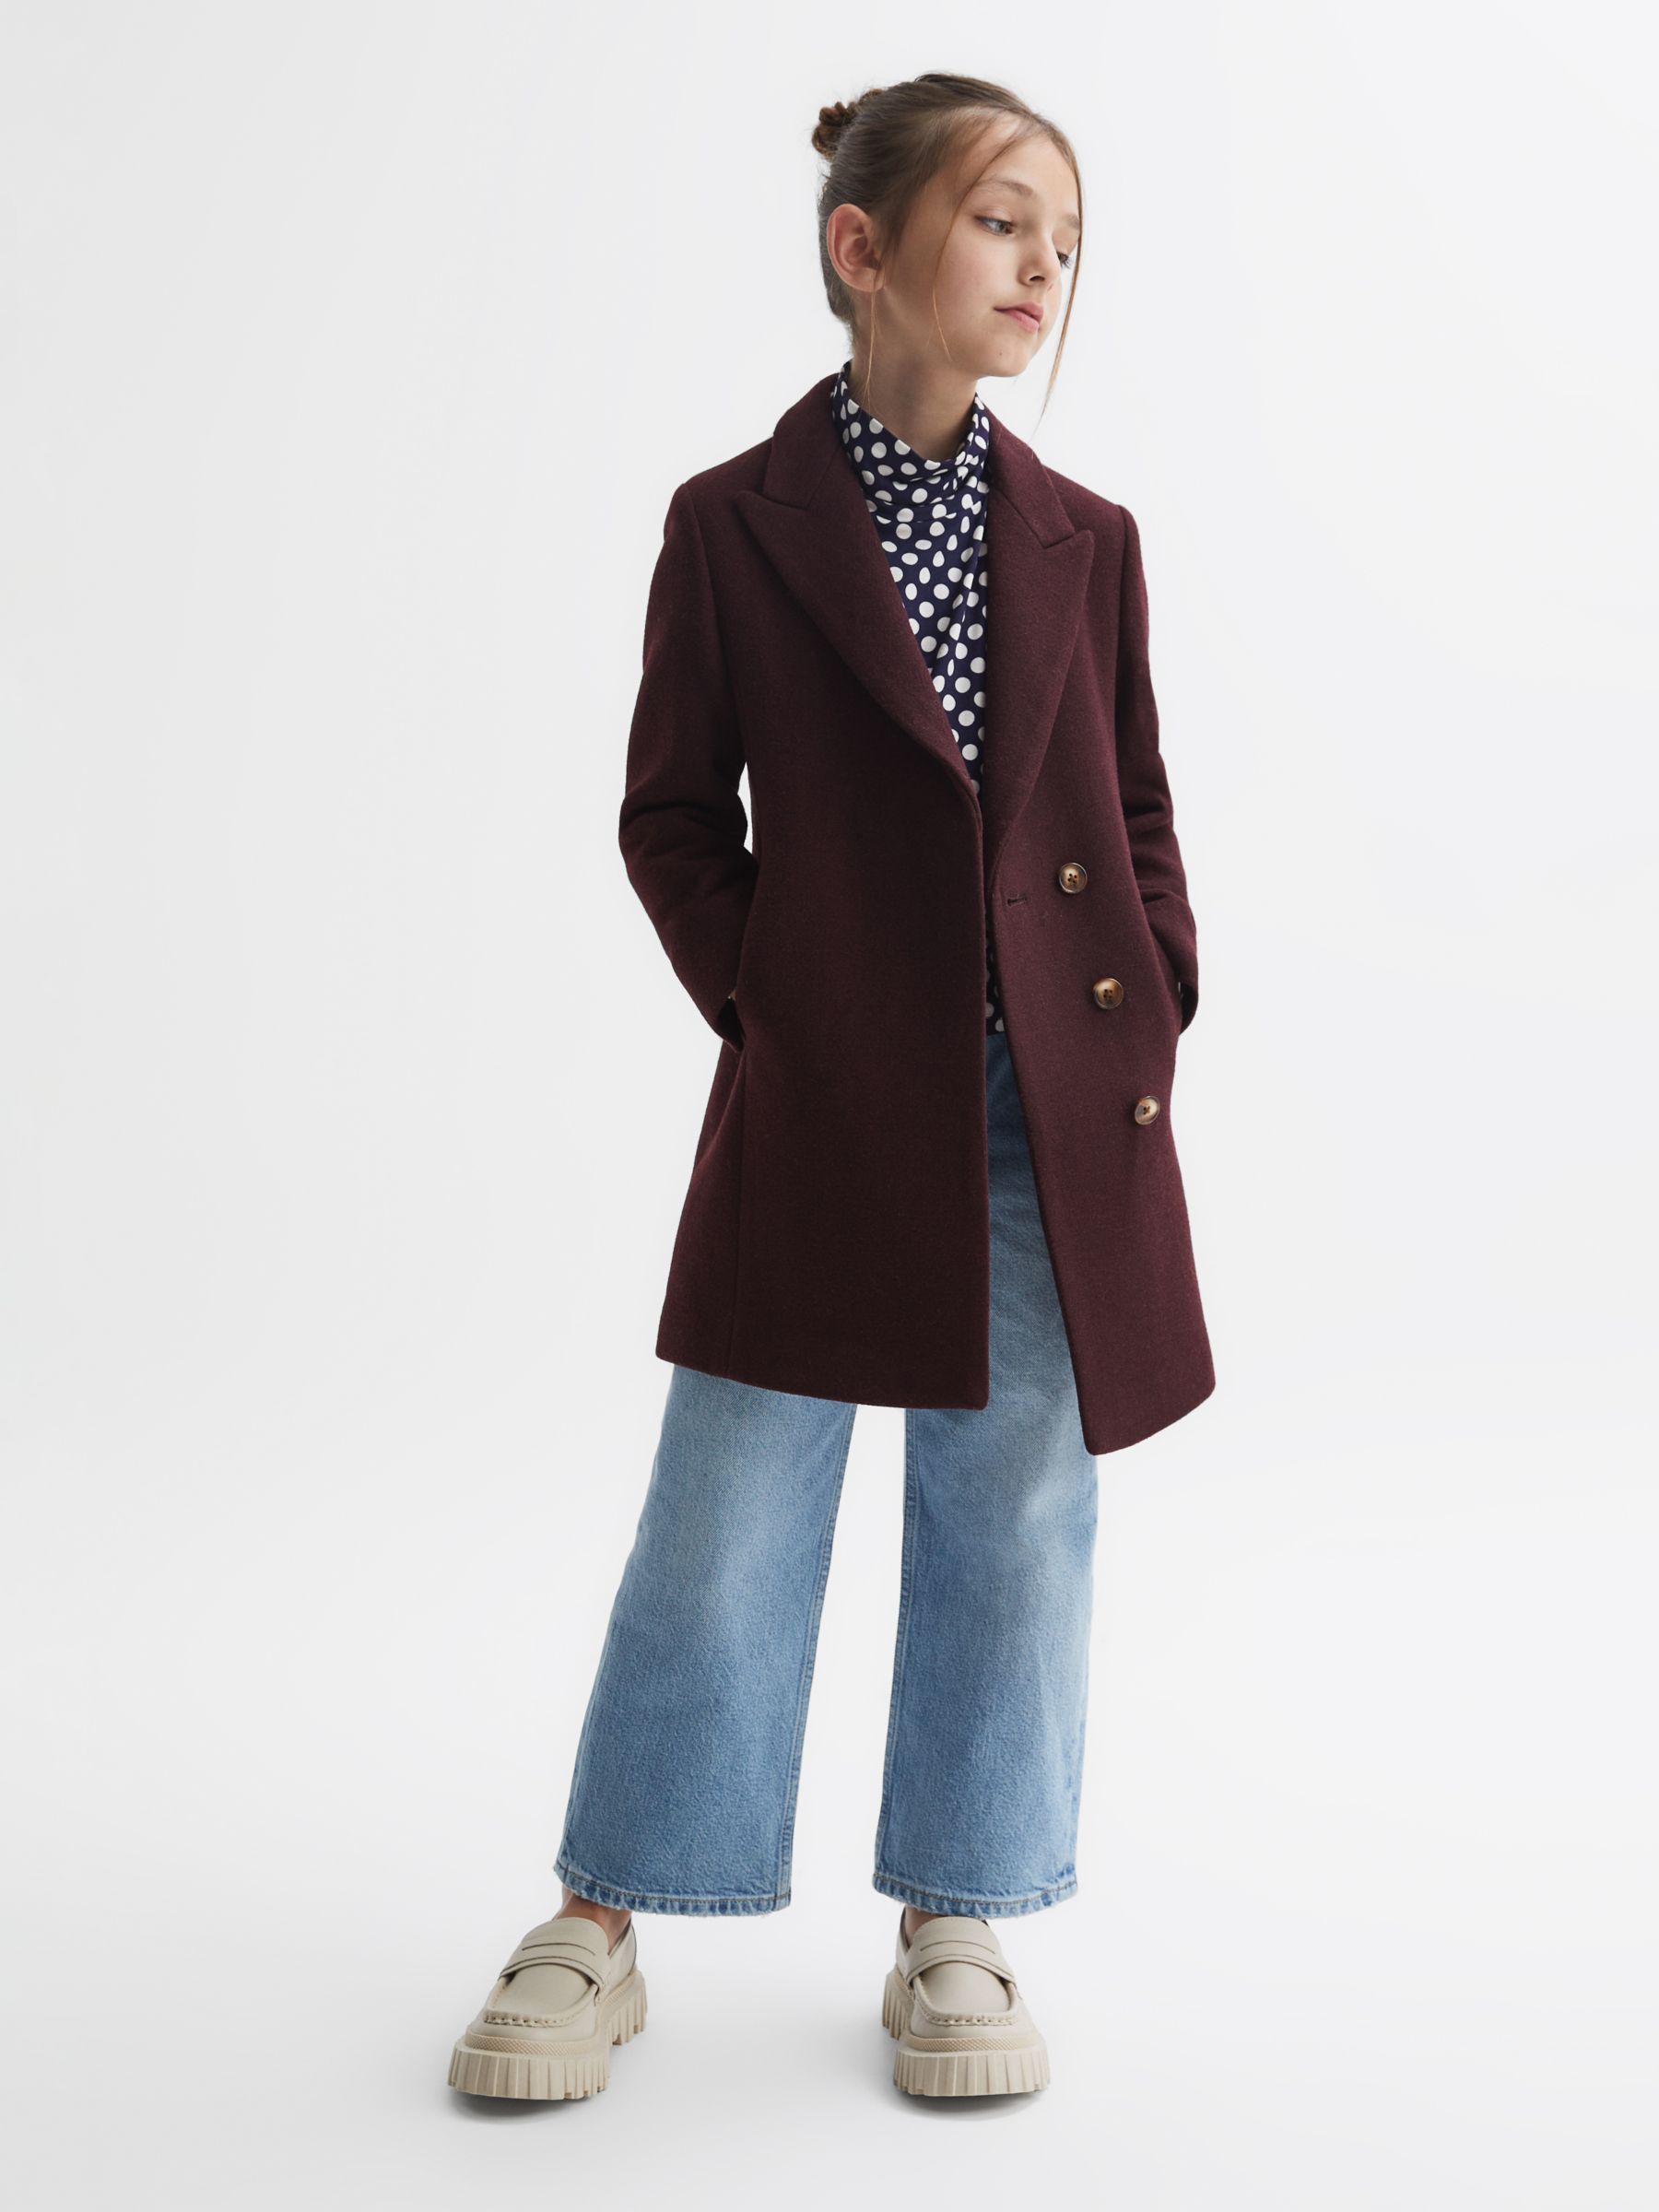 Reiss Kids' Harlow Wool Blend Mid Length Coat, Berry, 5-6 years